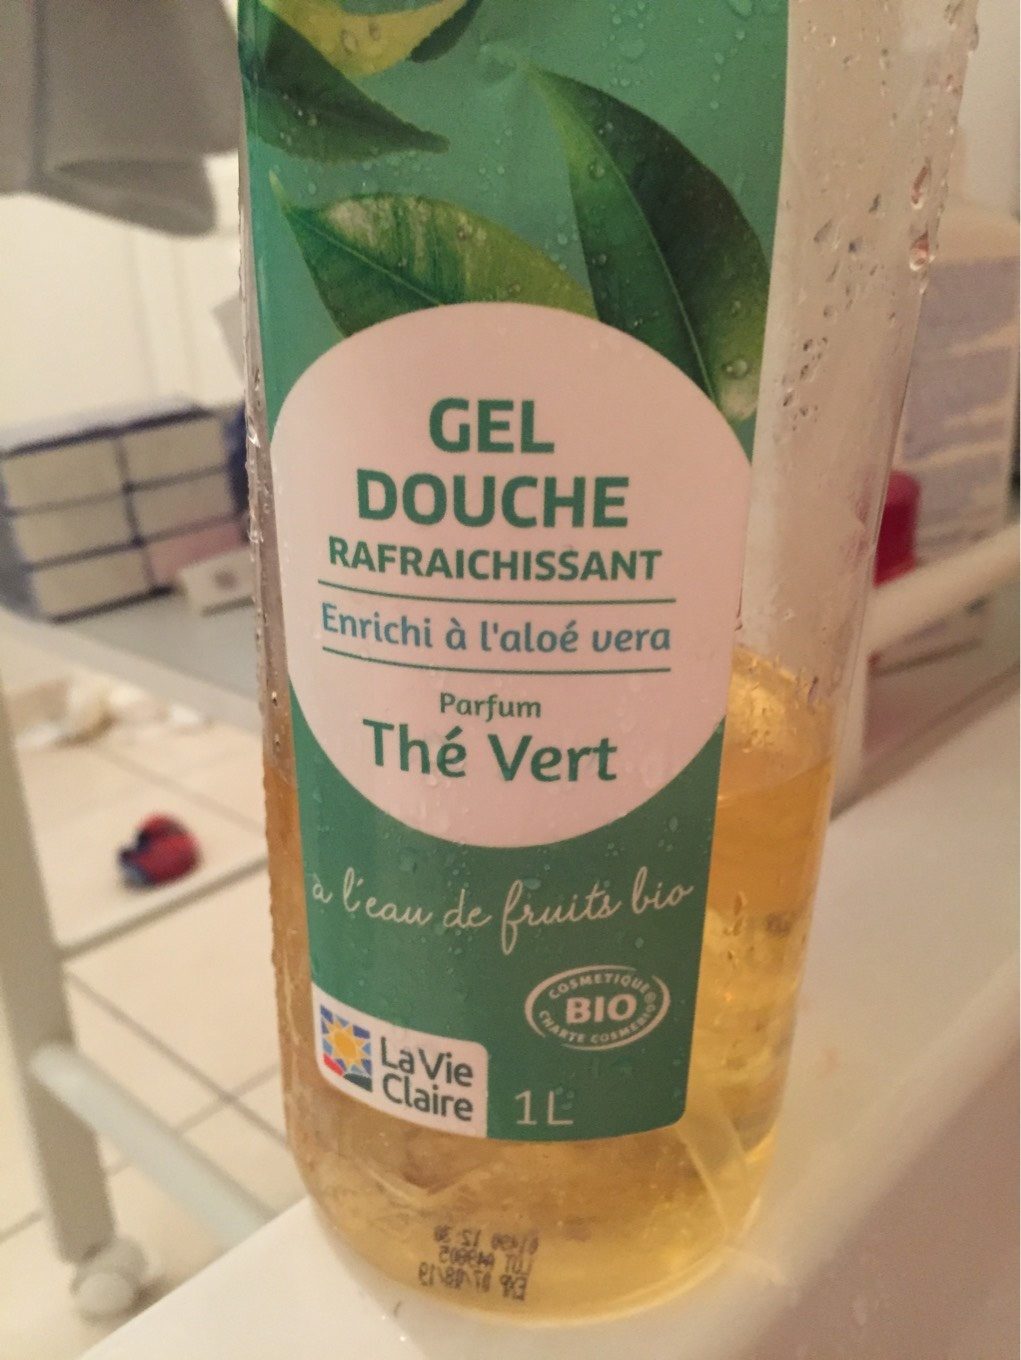 Gel douche the vert - Produto - fr